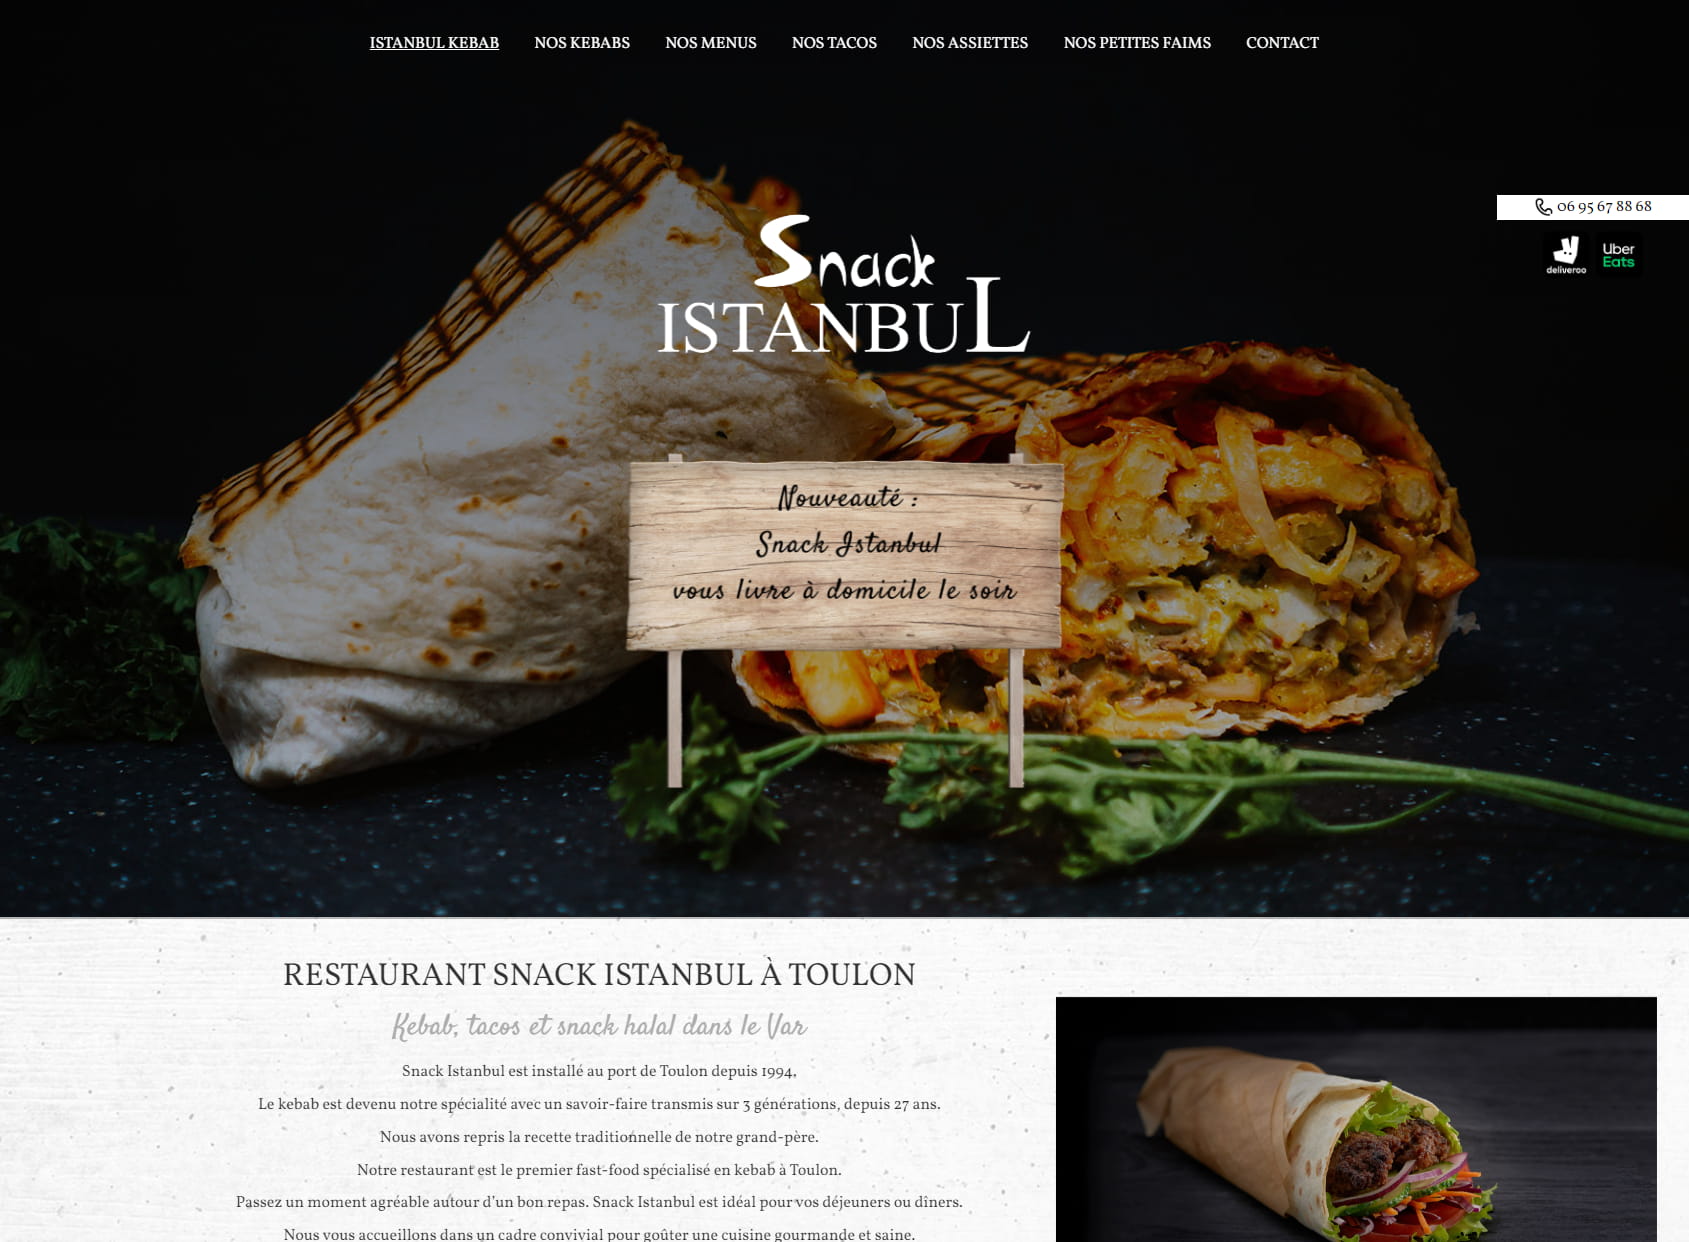 Snack Istanbul Kebab